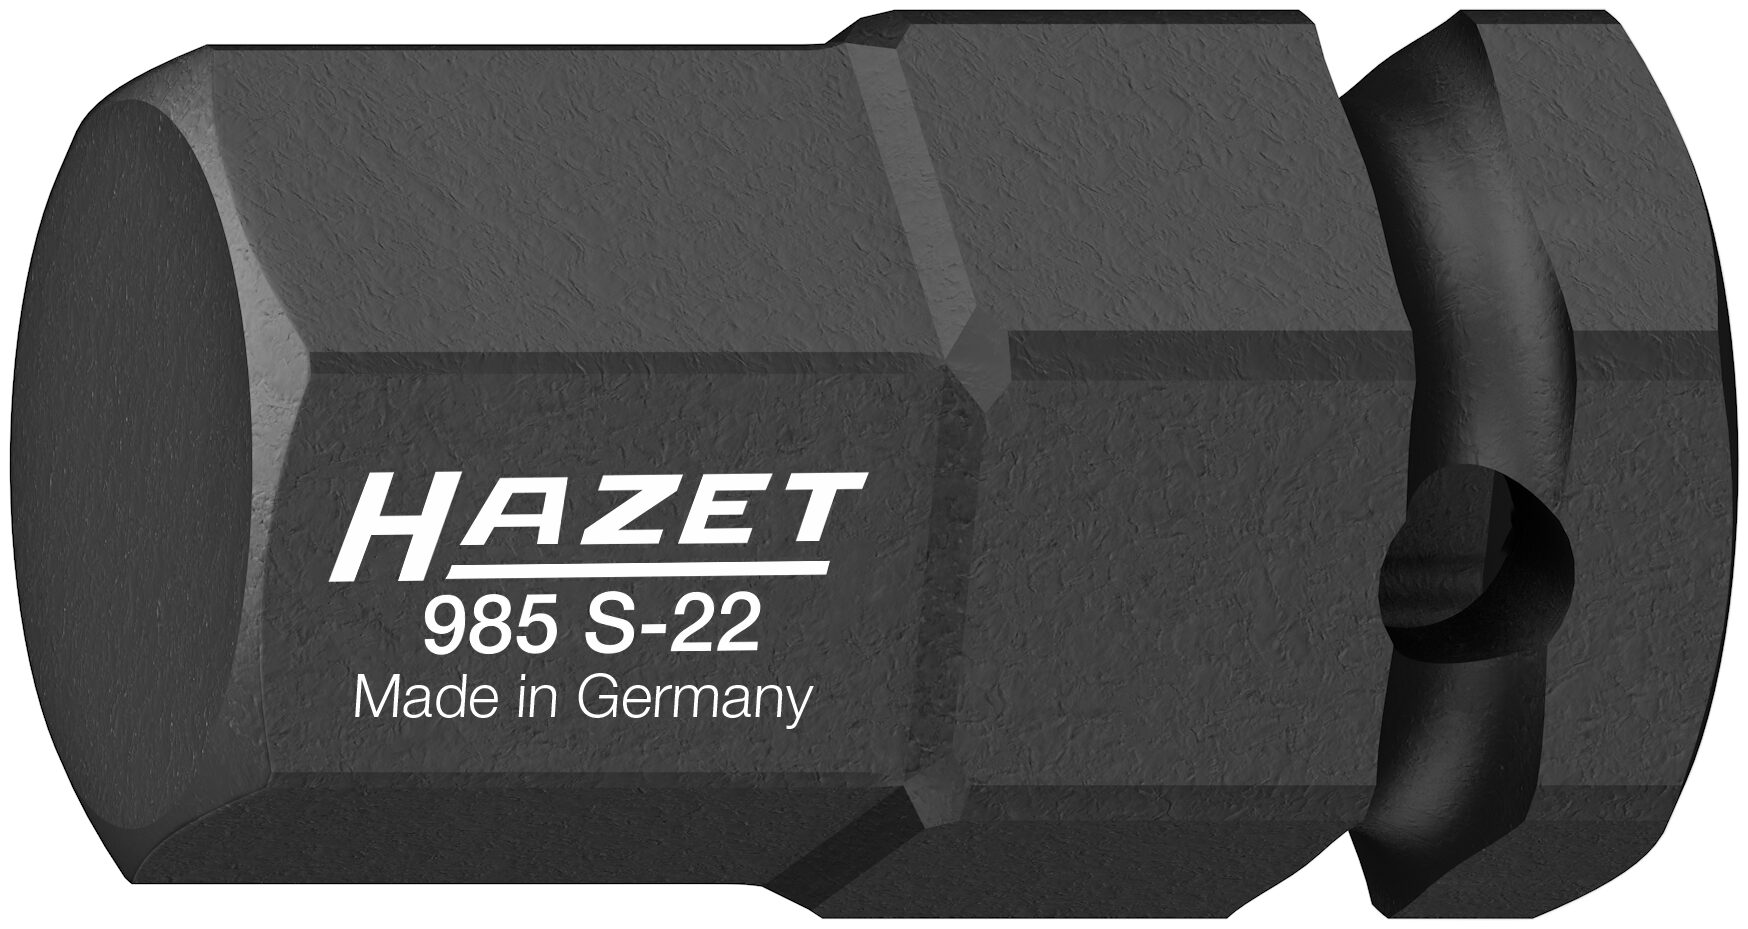 HAZET Schlag-, Maschinenschrauber Schraubendreher-Steckschlüsseleinsatz 985S-22 · Vierkant hohl 12,5 mm (1/2 Zoll) · Innen Sechskant Profil · 22 mm